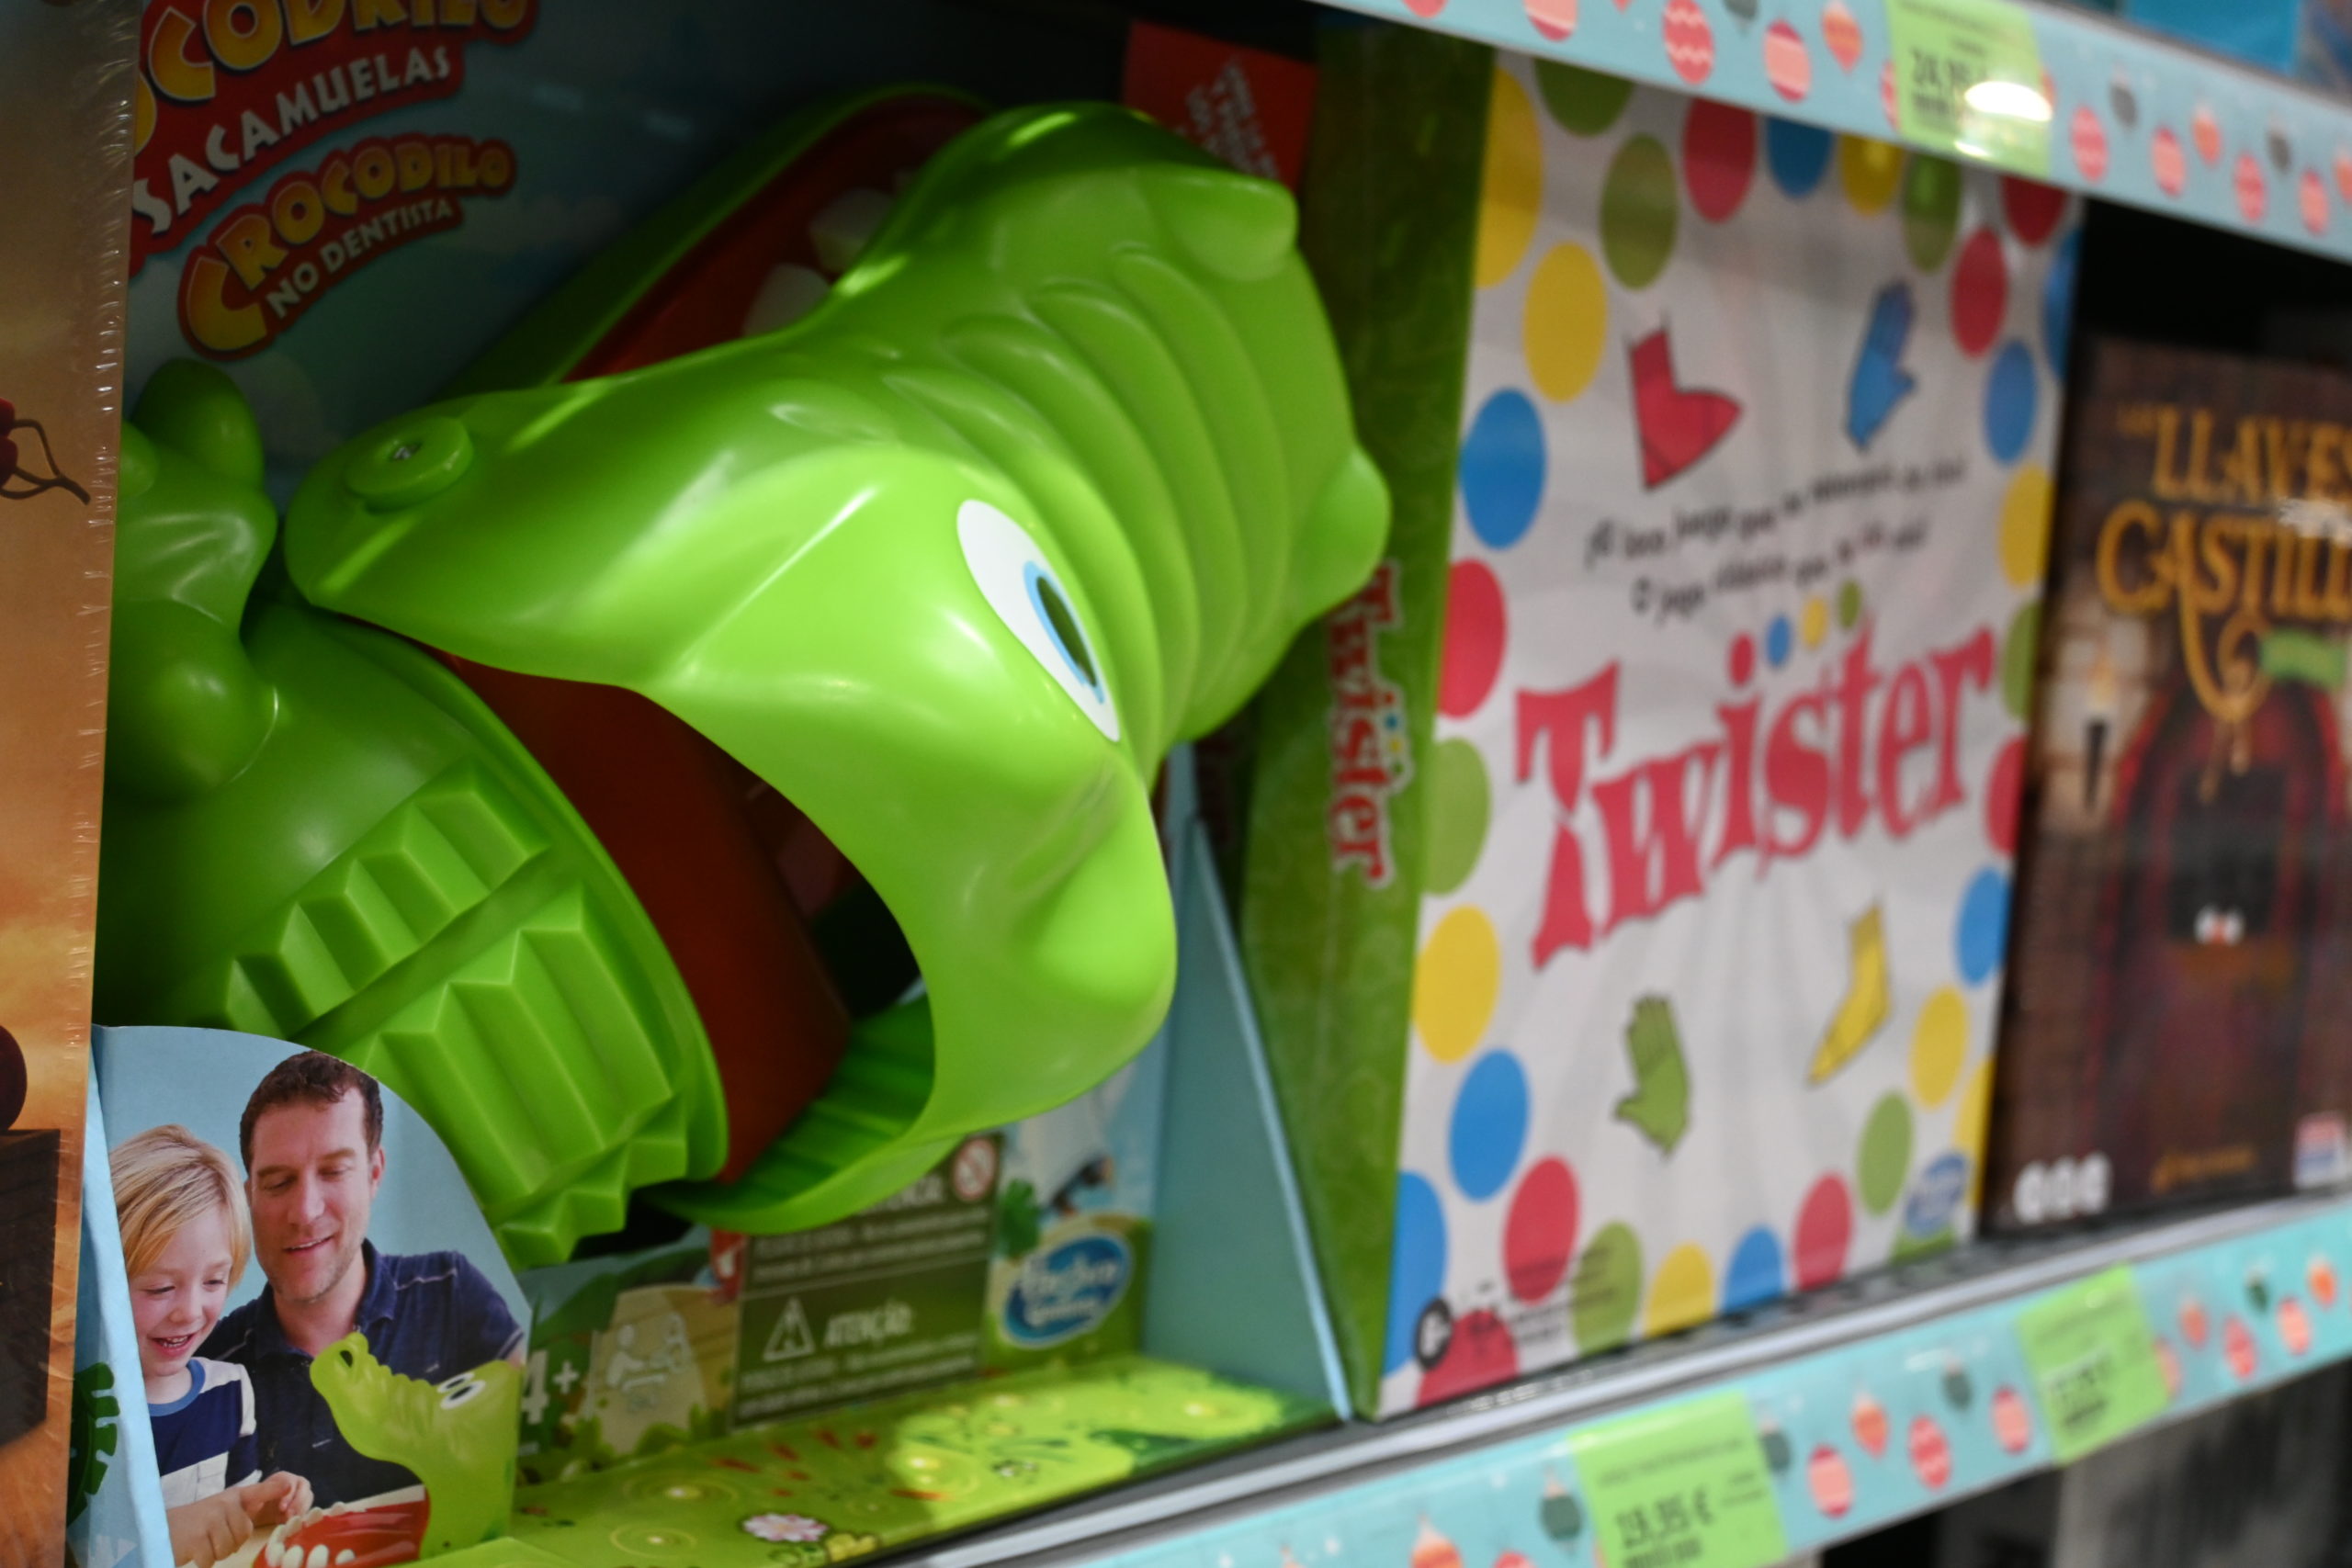 Family Cash impulsa su sección de juguetes con casi 1.000 referencias esta Navidad